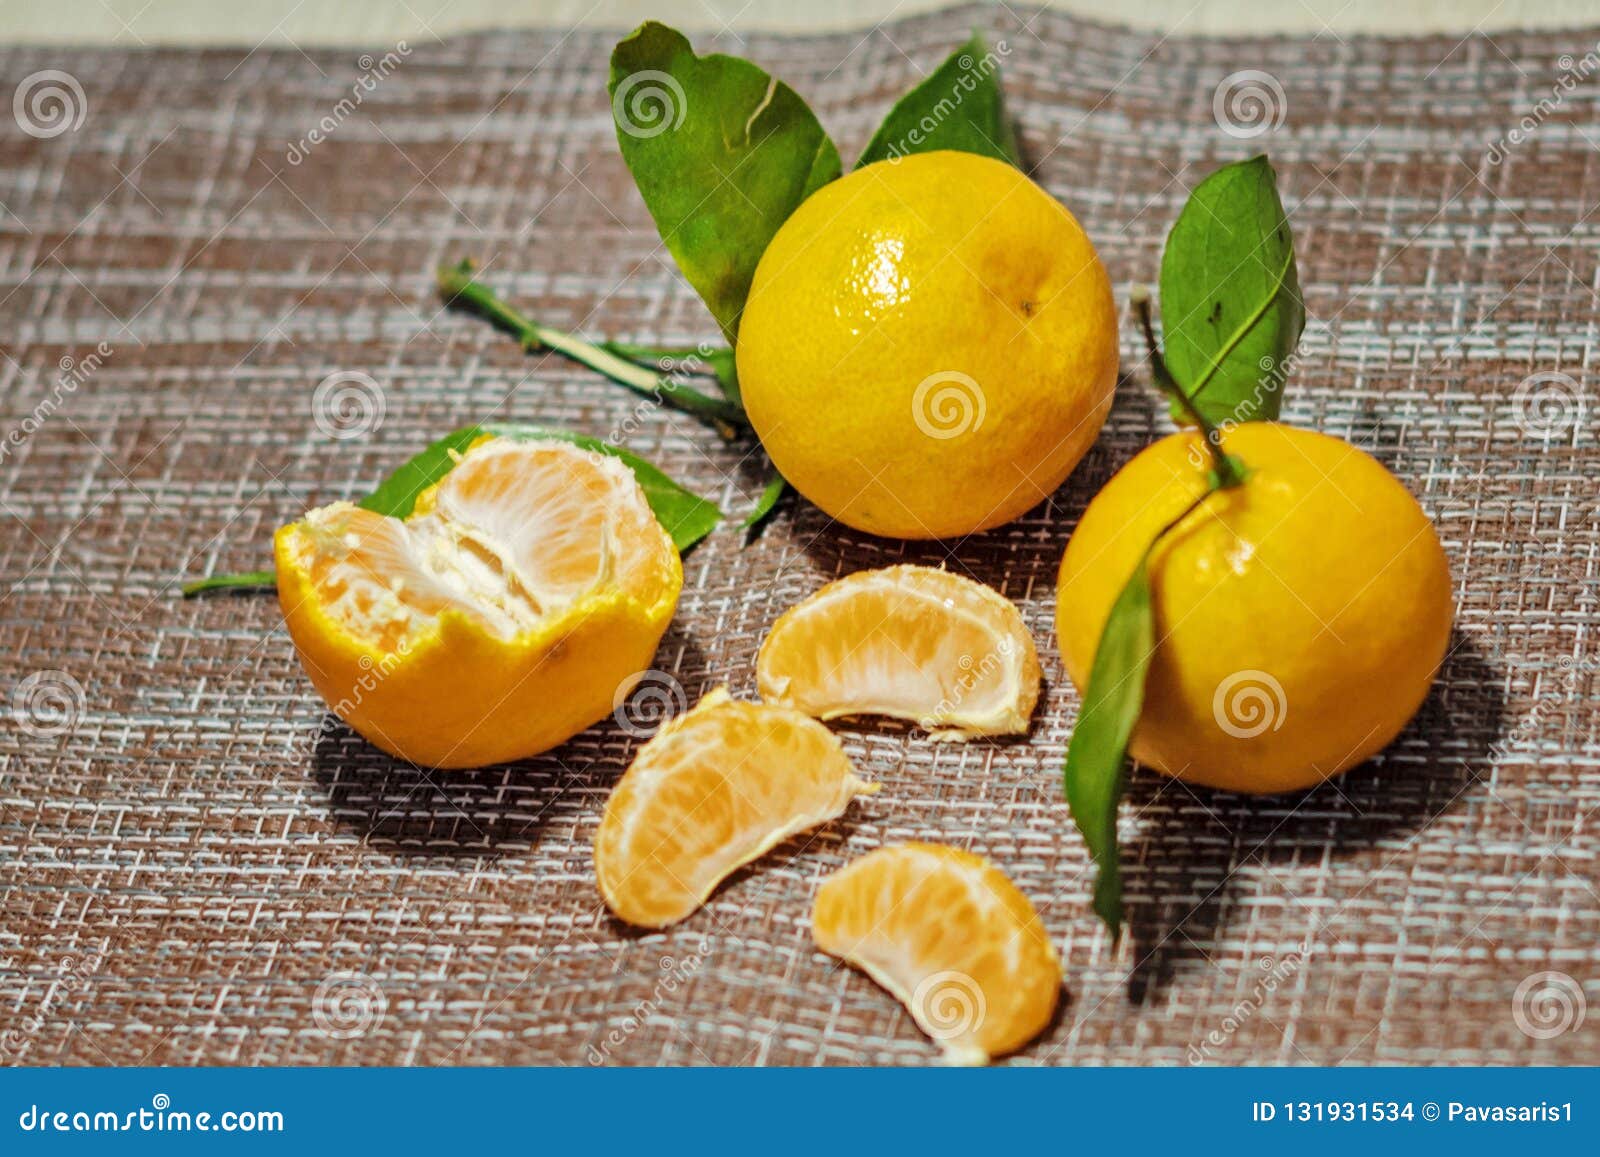 how much vitamin c in a cutie tangerine